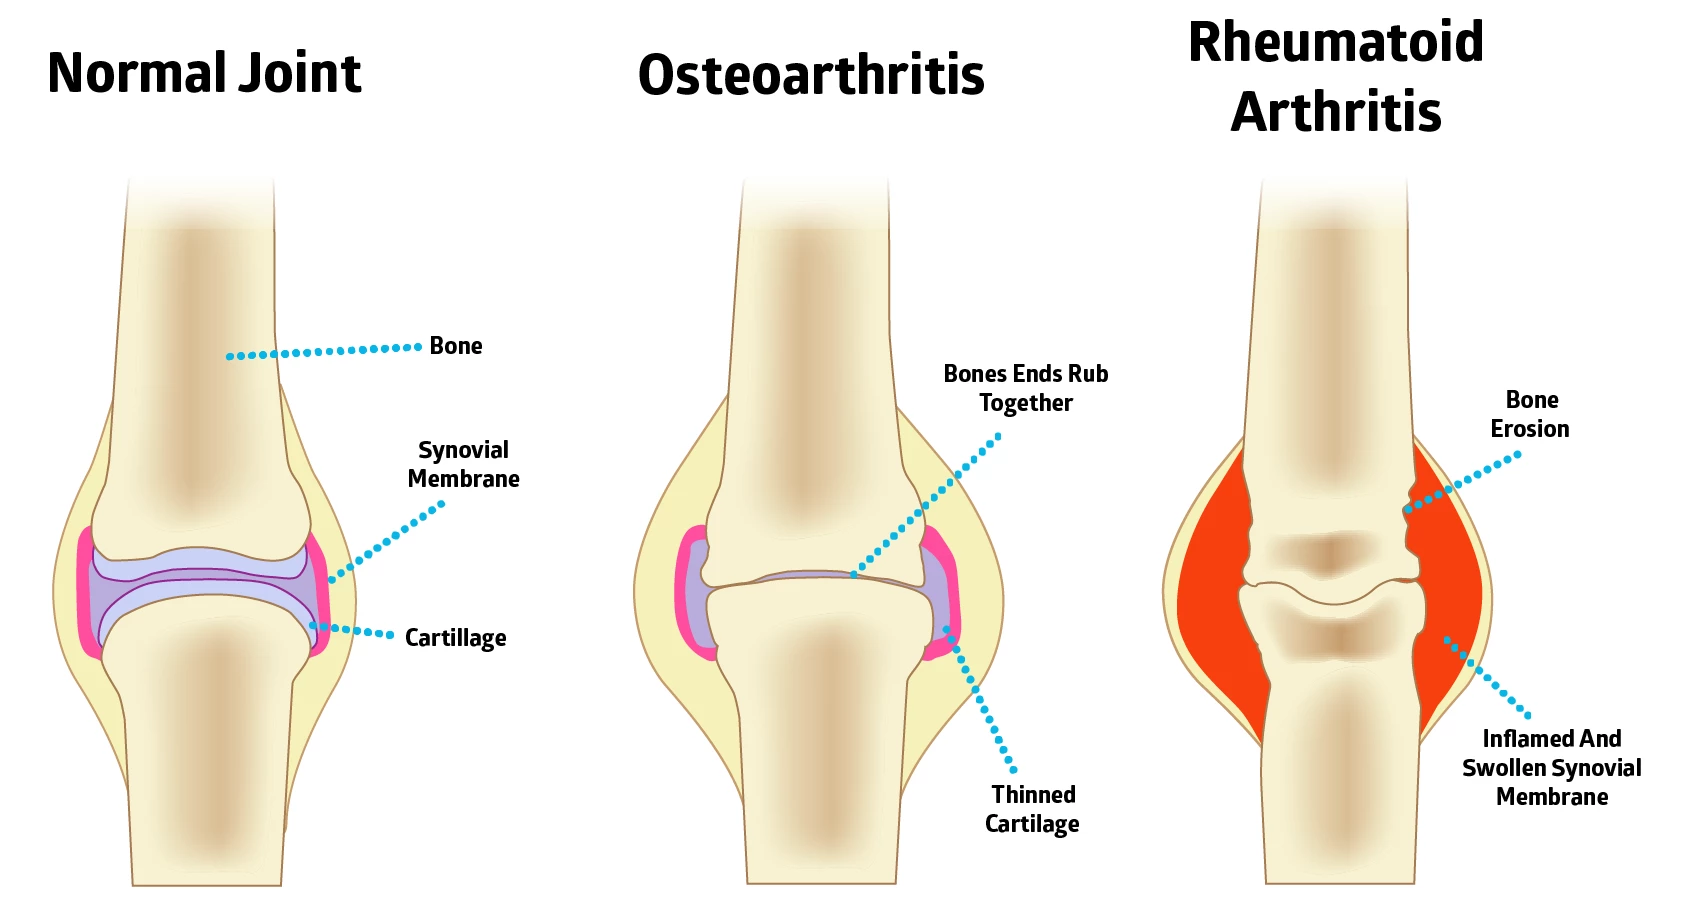 07317009232596-osteoarthritis-vs-rheumatoid-arthritis-15668039987761.png